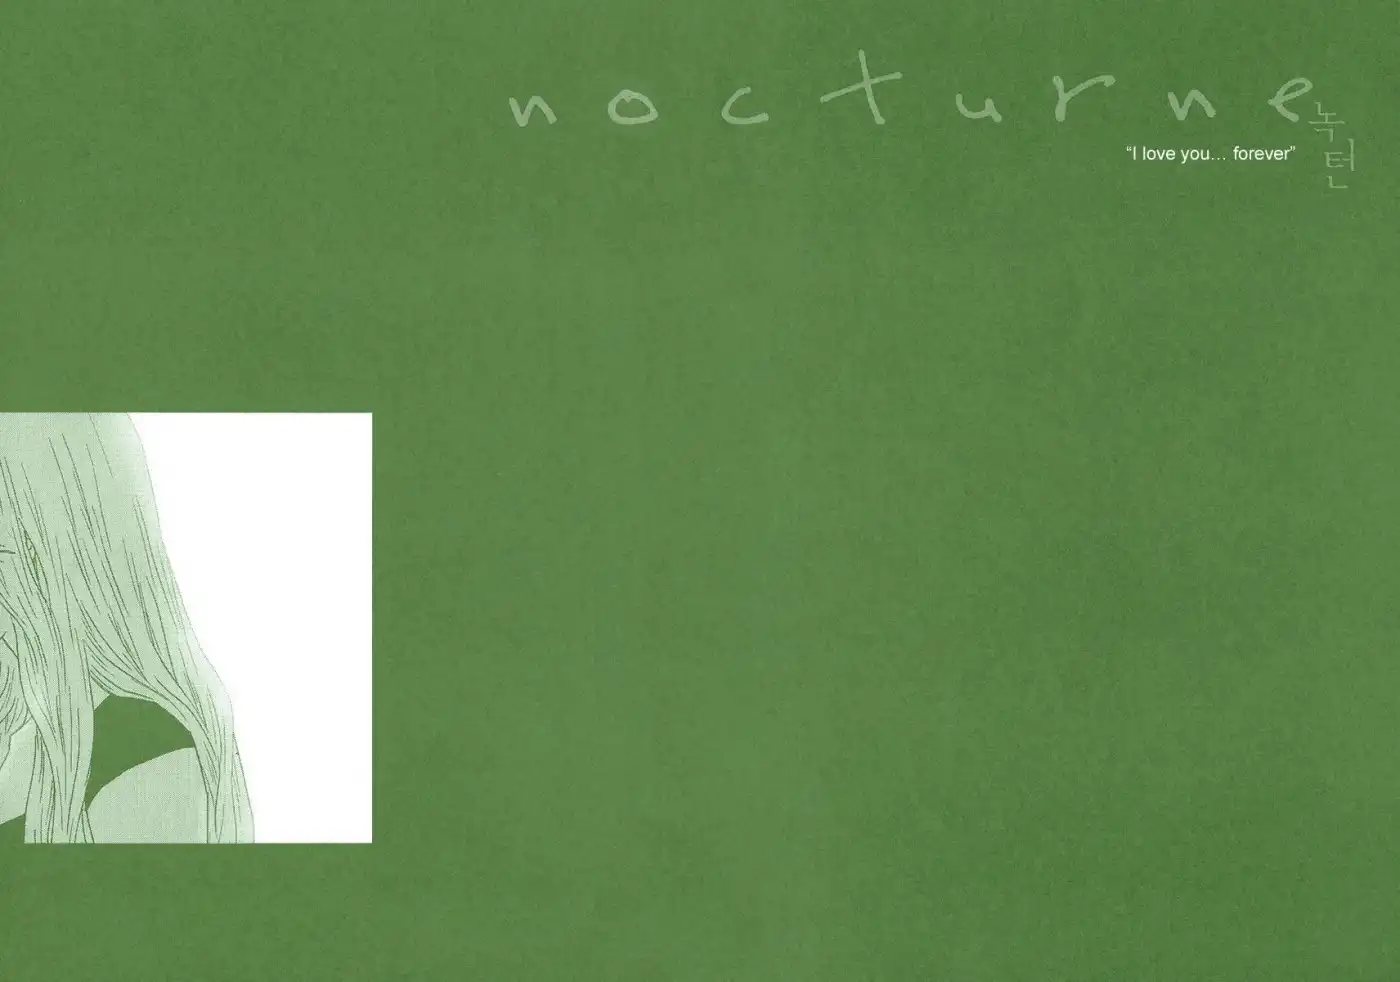 Nocturne (PARK Eun-Ah) Chapter 45.5